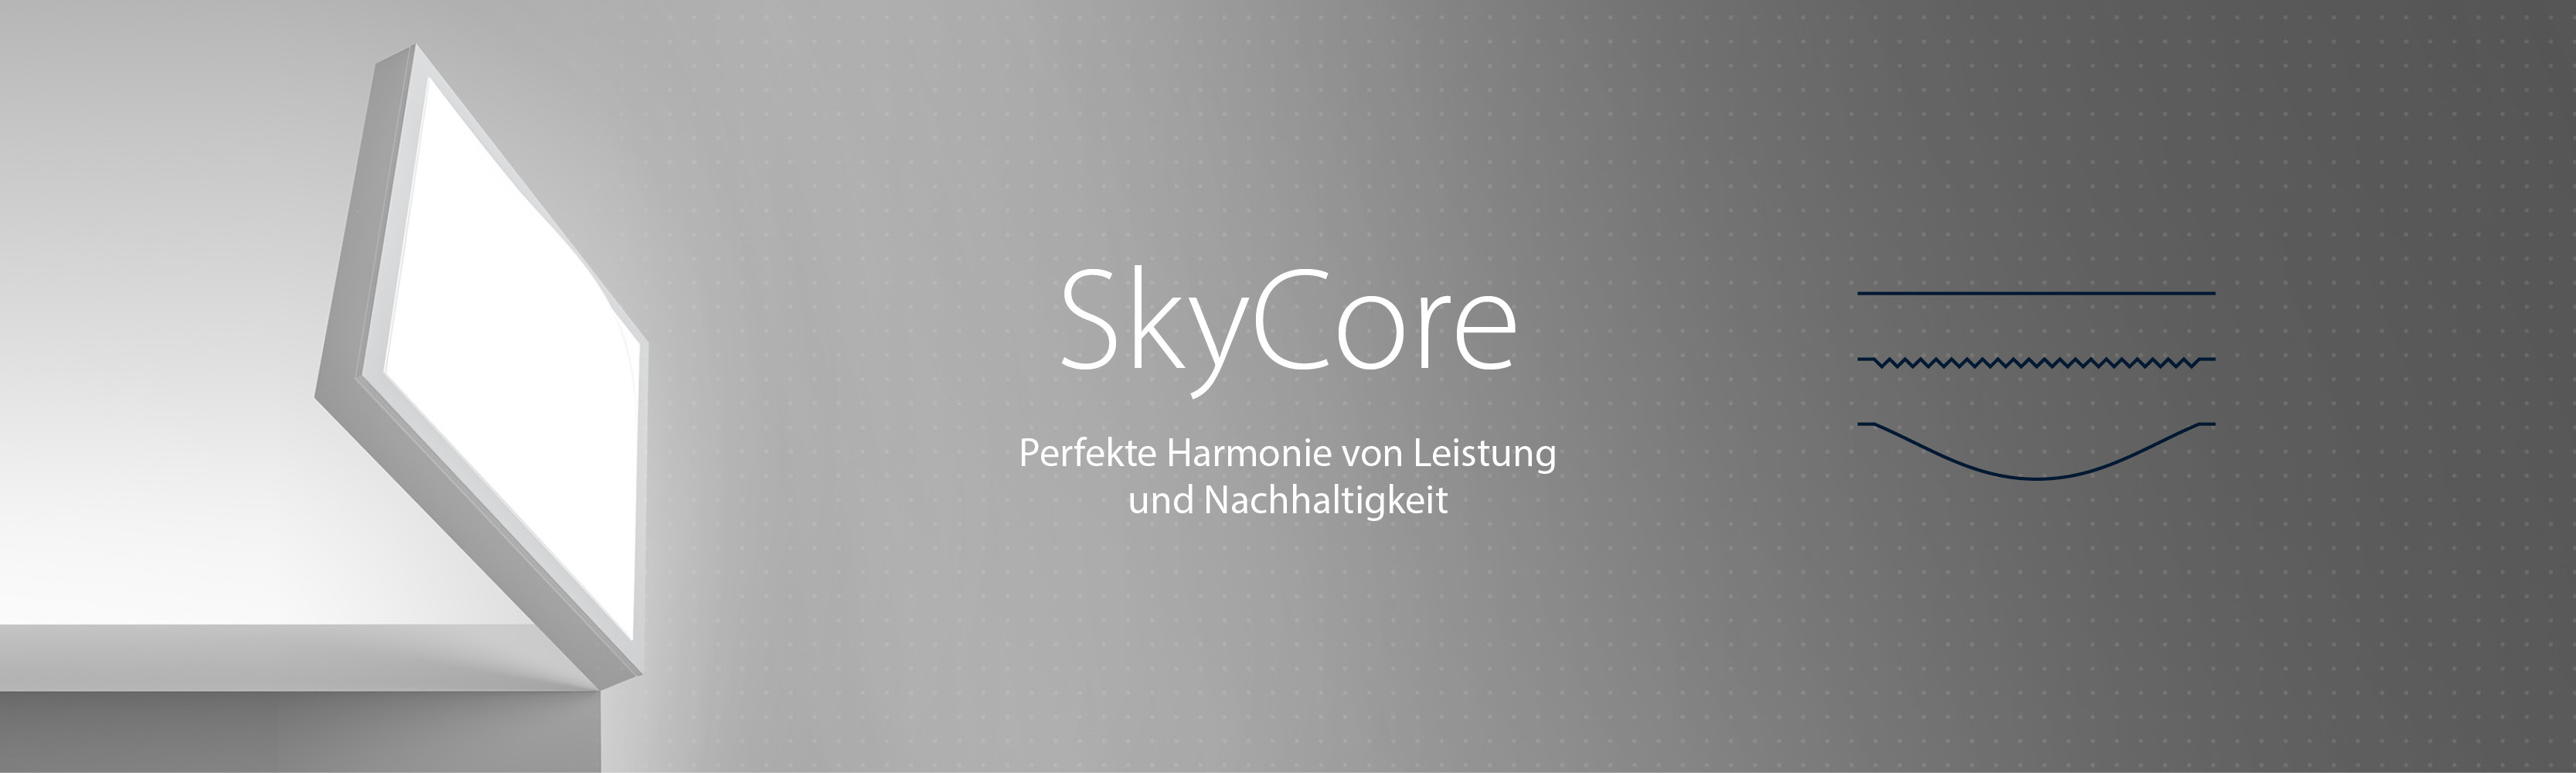 SkyCore - Perfekte Harmonie von Leistung und Nachhaltigkeit